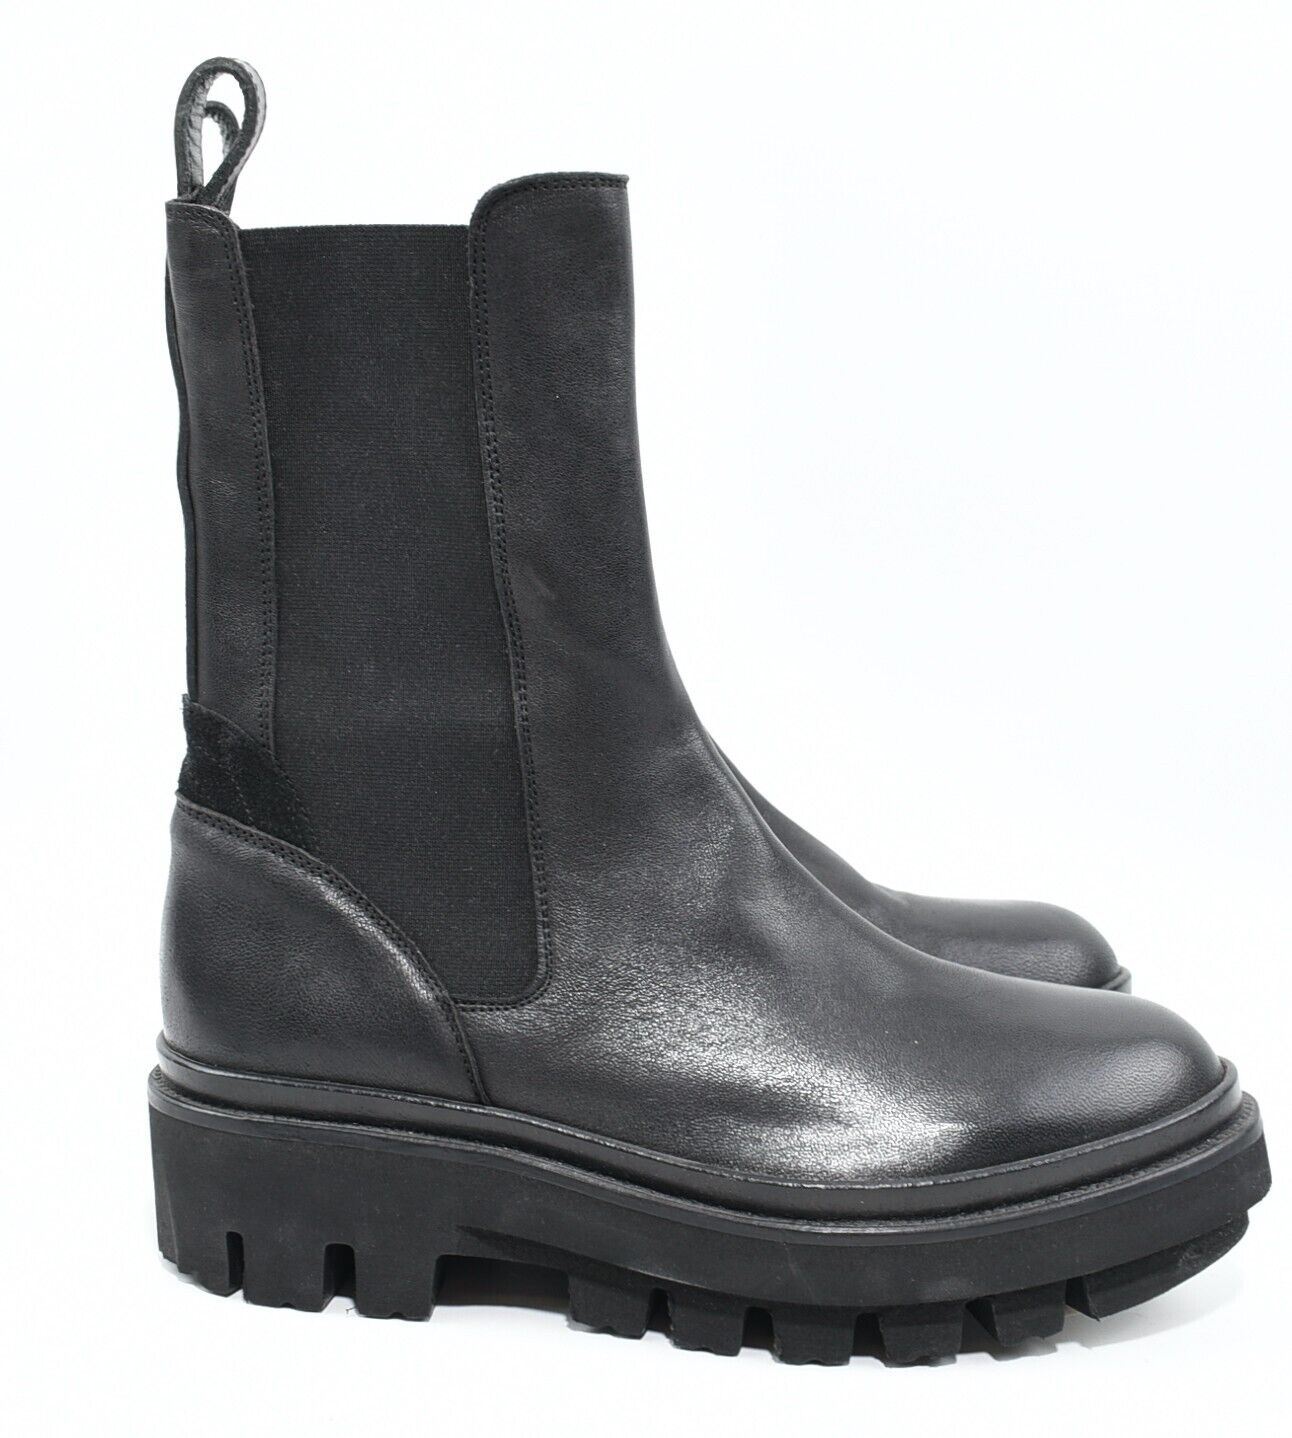 ALLSAINTS Womens BILLIE Genuine Leather Boots, Black, size UK 7 /EU 40